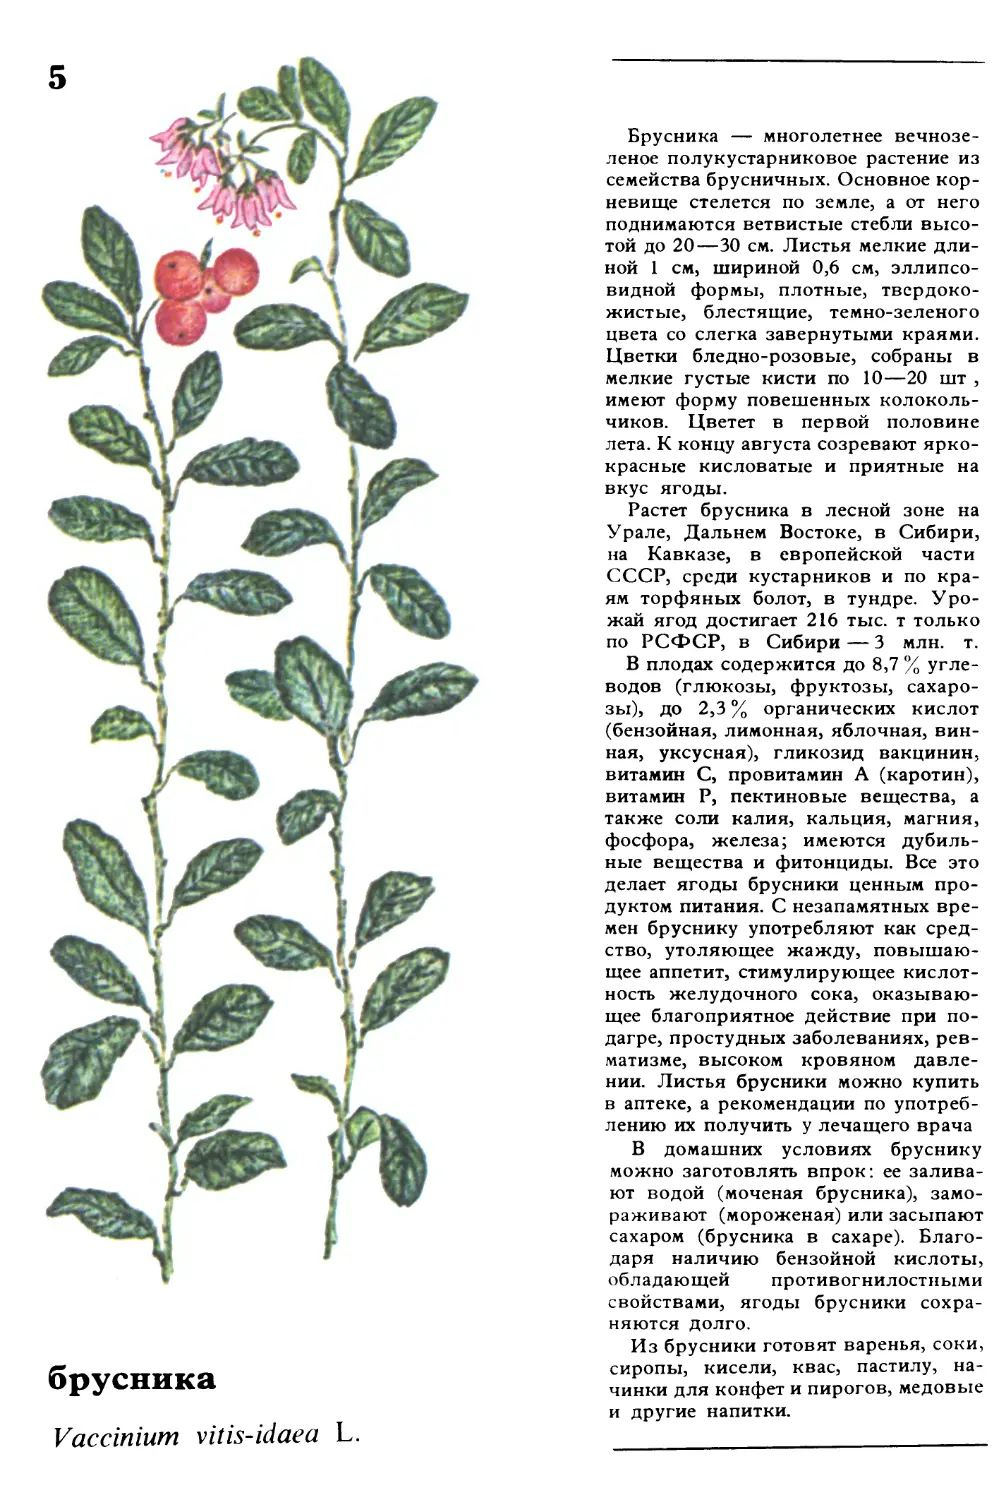 Брусника
брусника
Vaccinium vitisidaea L.